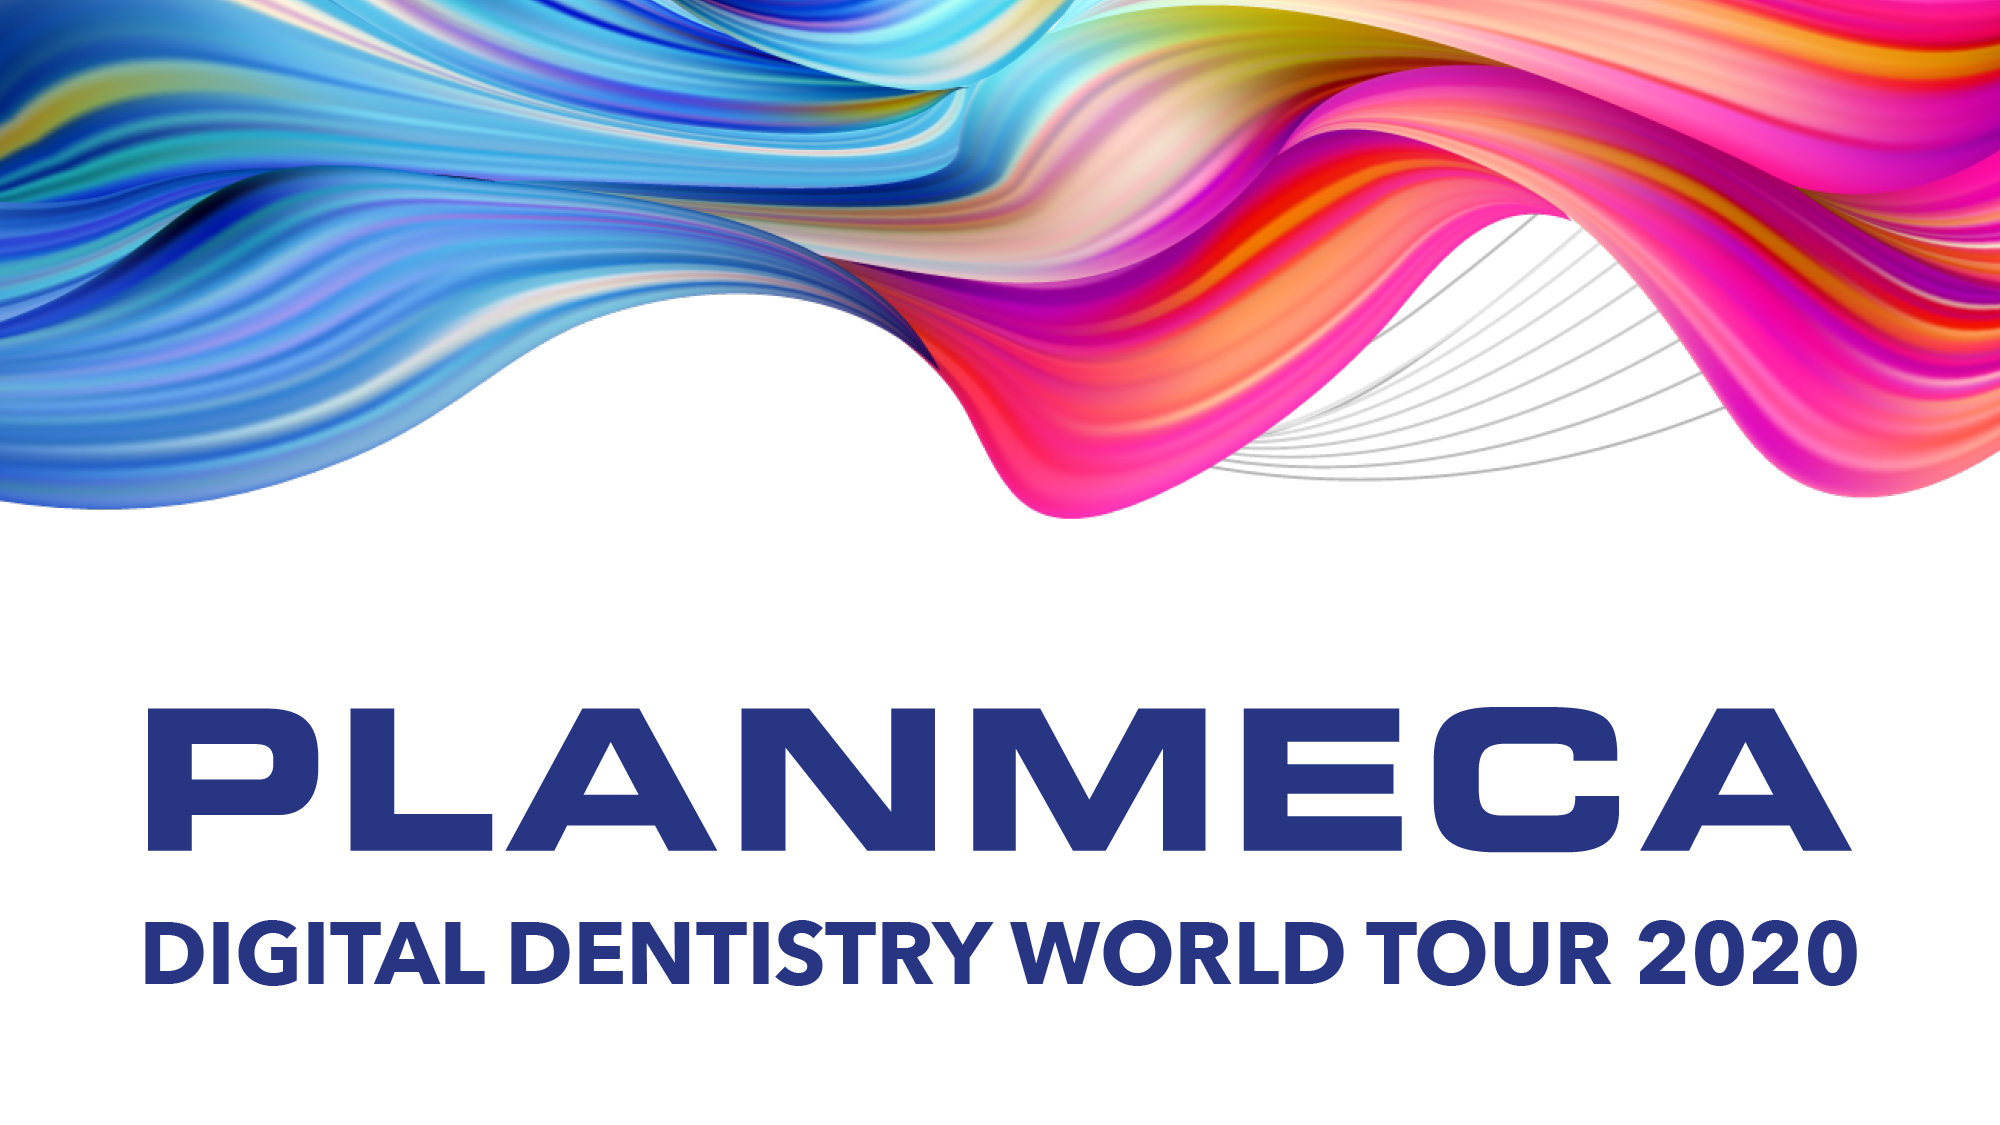 Le Planmeca Digital Dentistry World Tour 2020 se déroulera en ligne